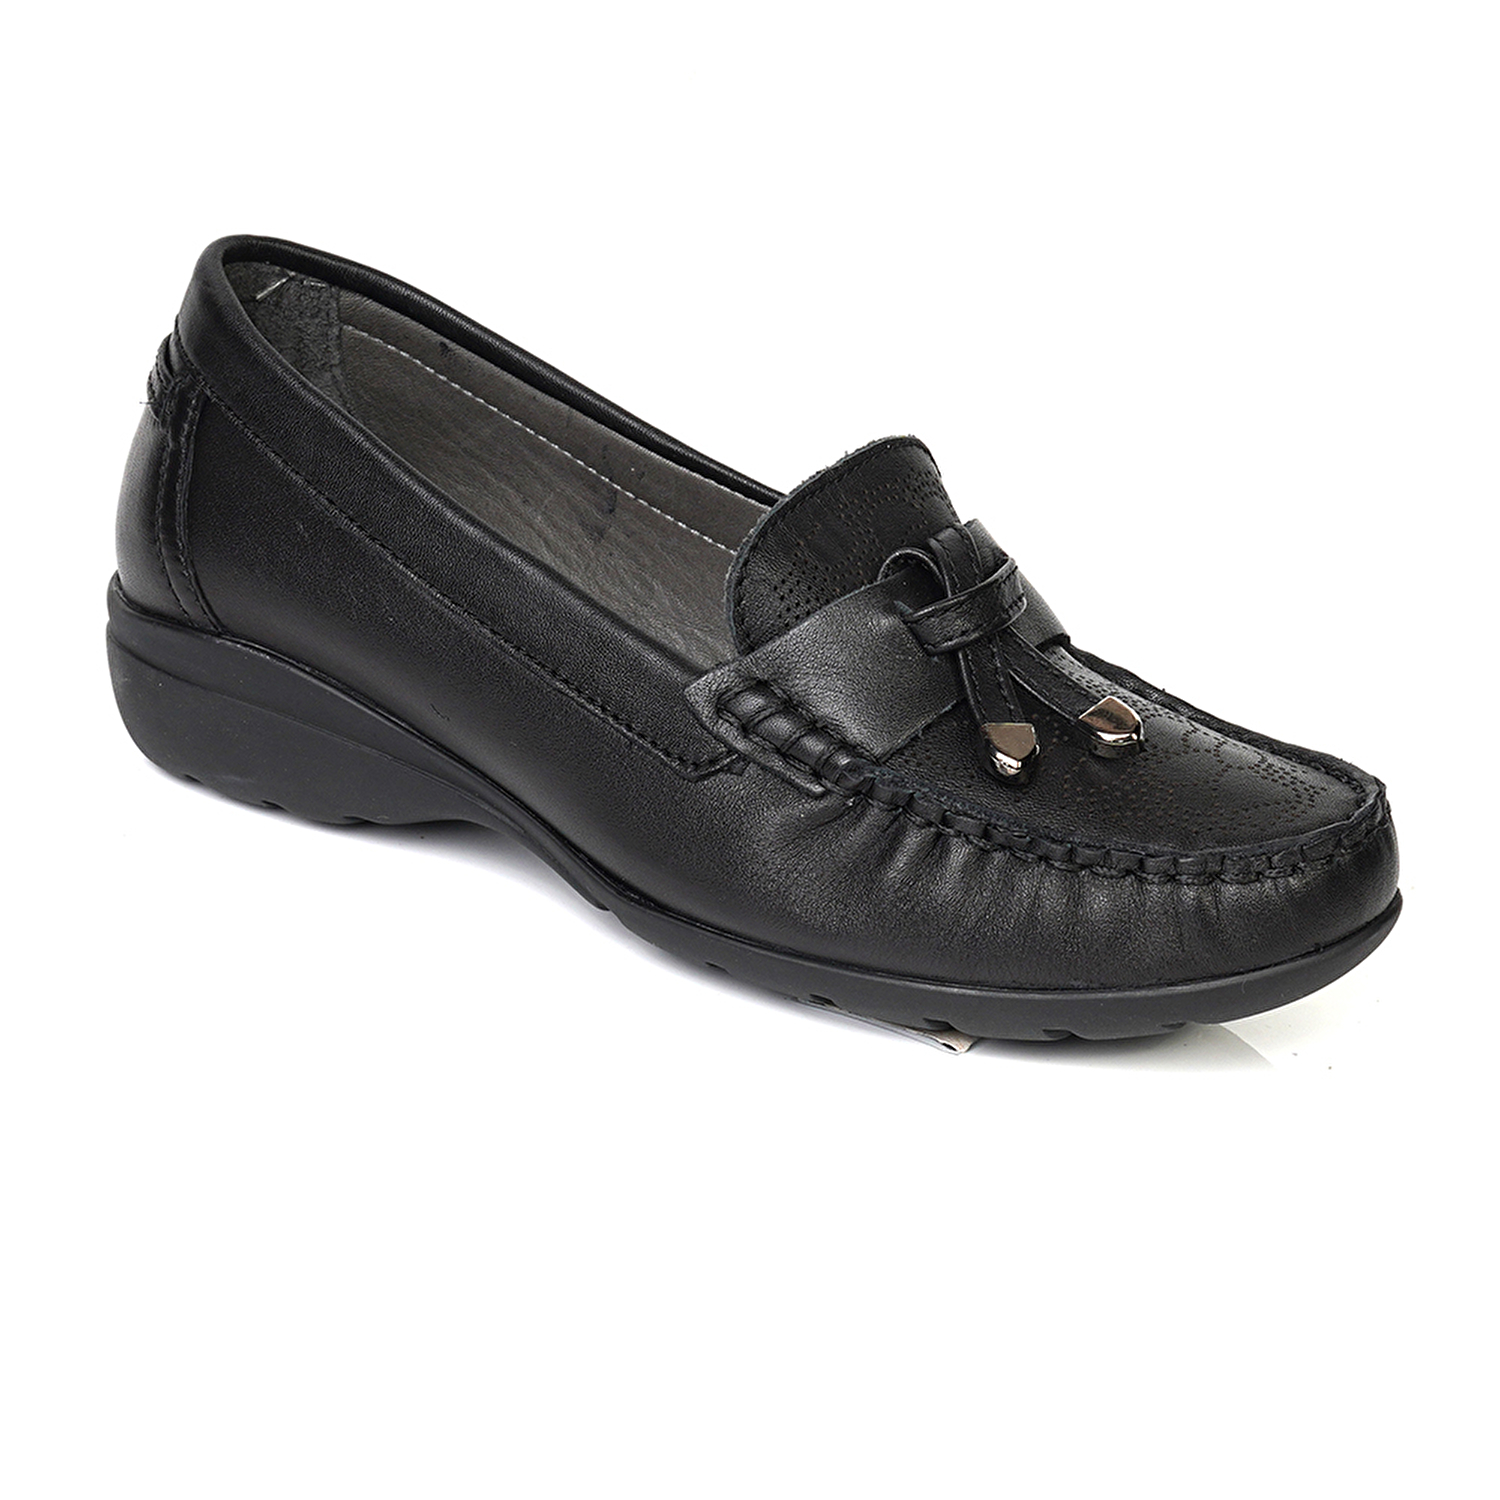 Kadın Siyah Hakiki Deri Comfort Ayakkabı 4Y2FA25593-1